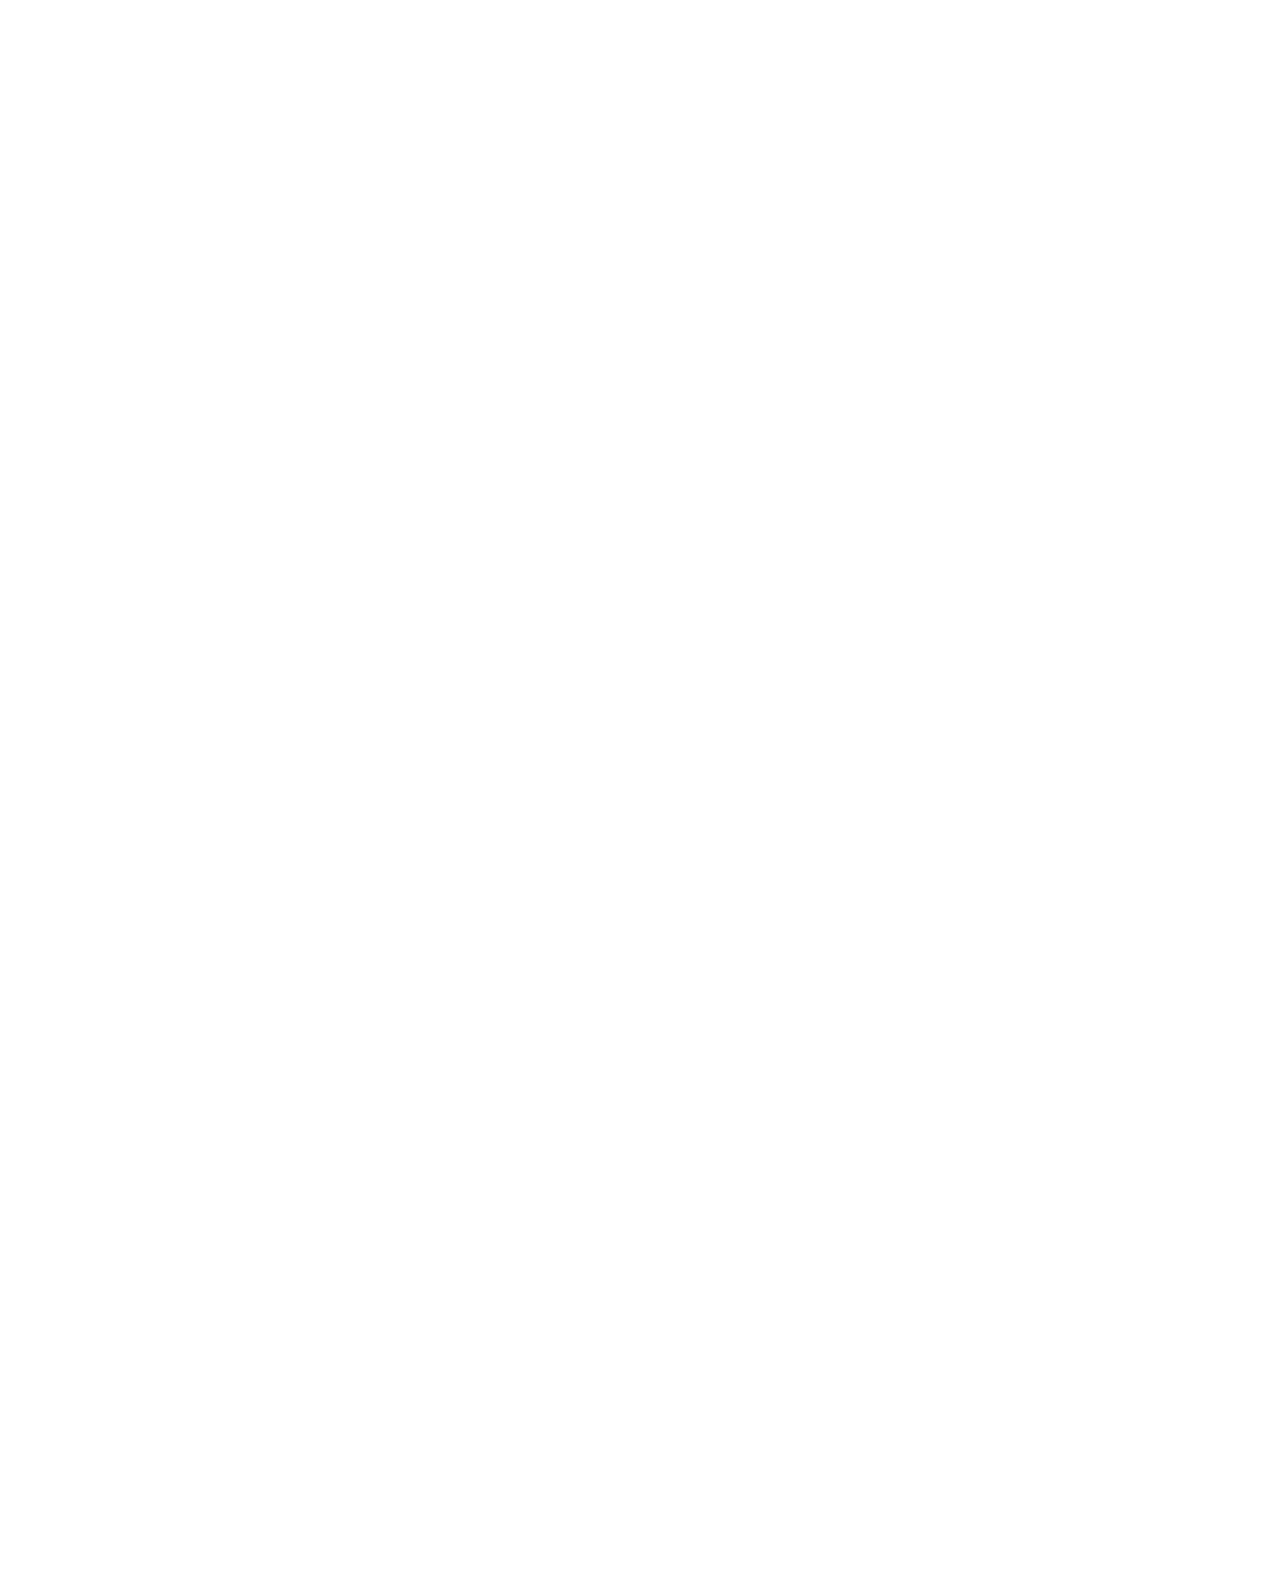 Rockley Photonics logo for dark backgrounds (transparent PNG)